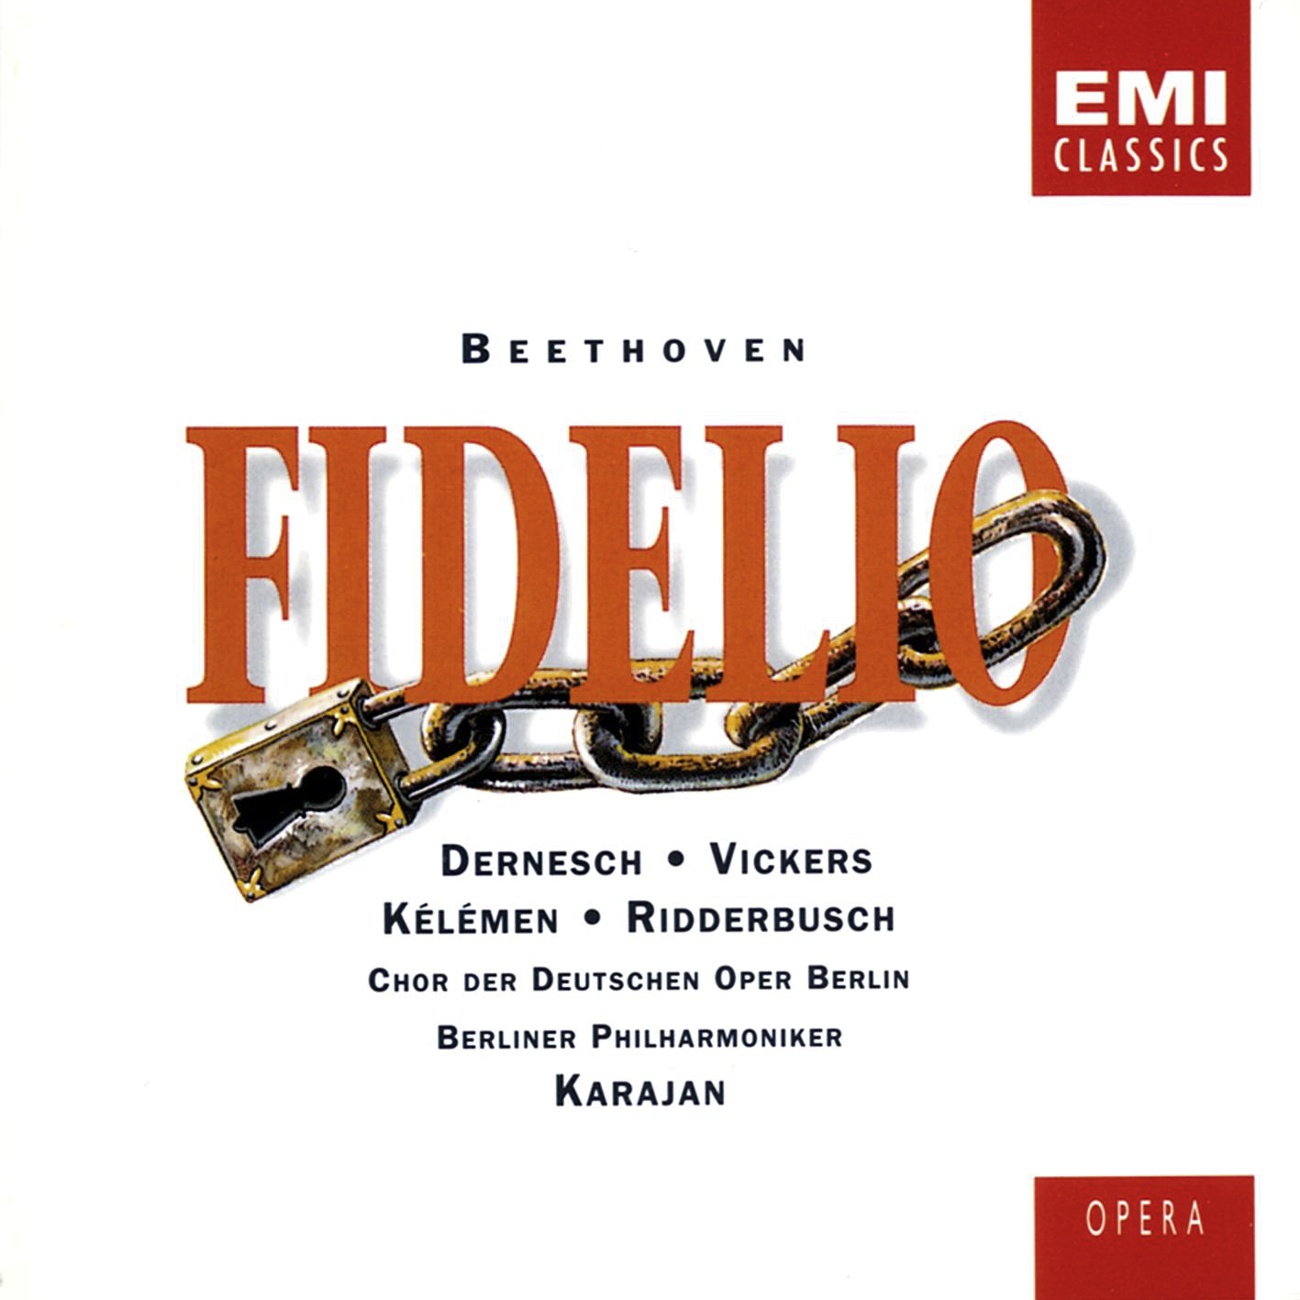 Fidelio Op. 72, ACT 1: 'Vater Rocco, ich ermuchte Euch schon....' (Leonore/Marzelline/Rocco)